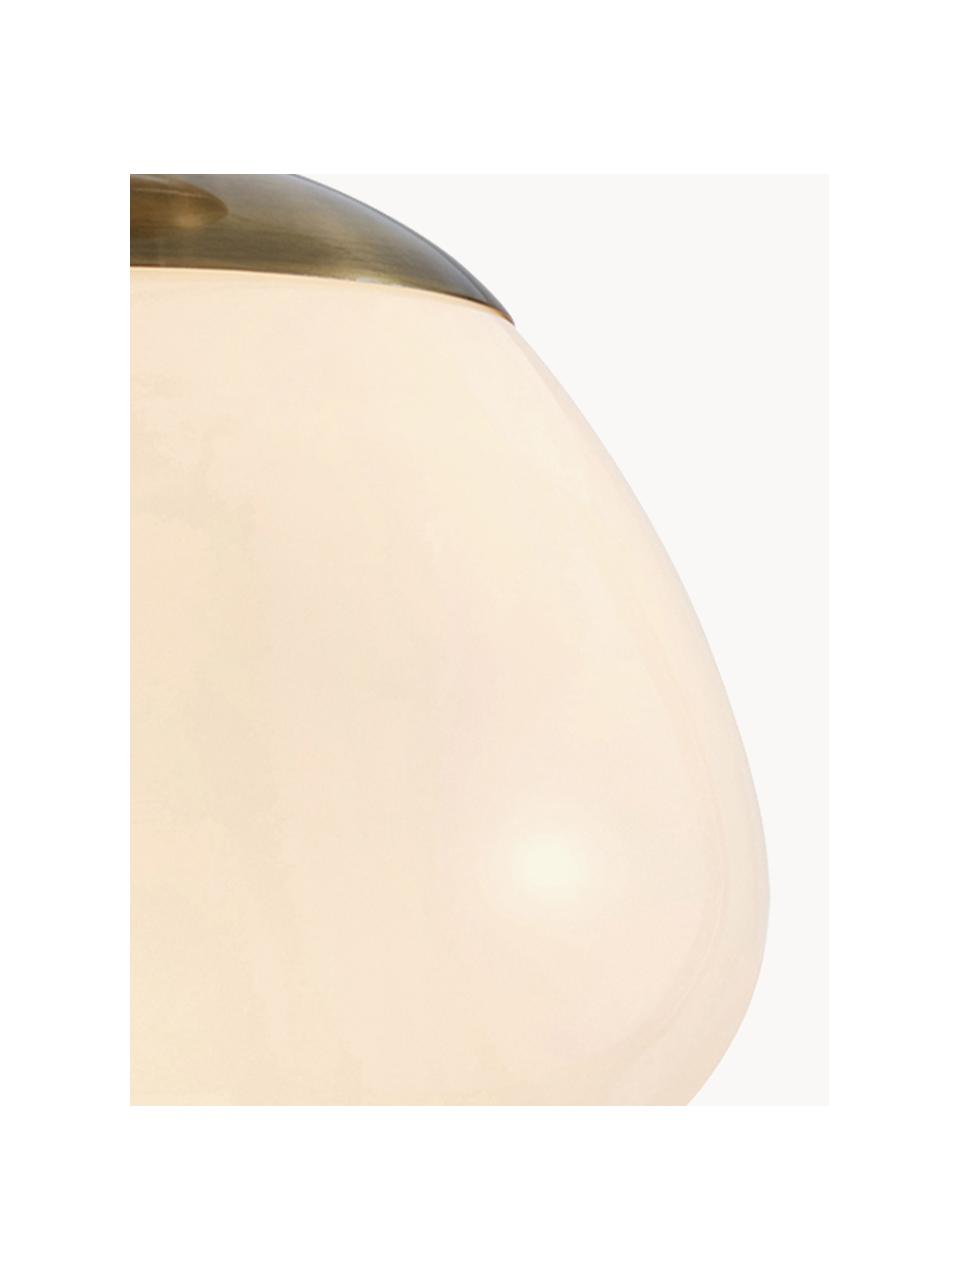 Deckenleuchte Rise, Lampenschirm: Glas, Baldachin: Stahl, gebürstet, Cremeweiss, Goldfarben, Ø 25 x H 35 cm